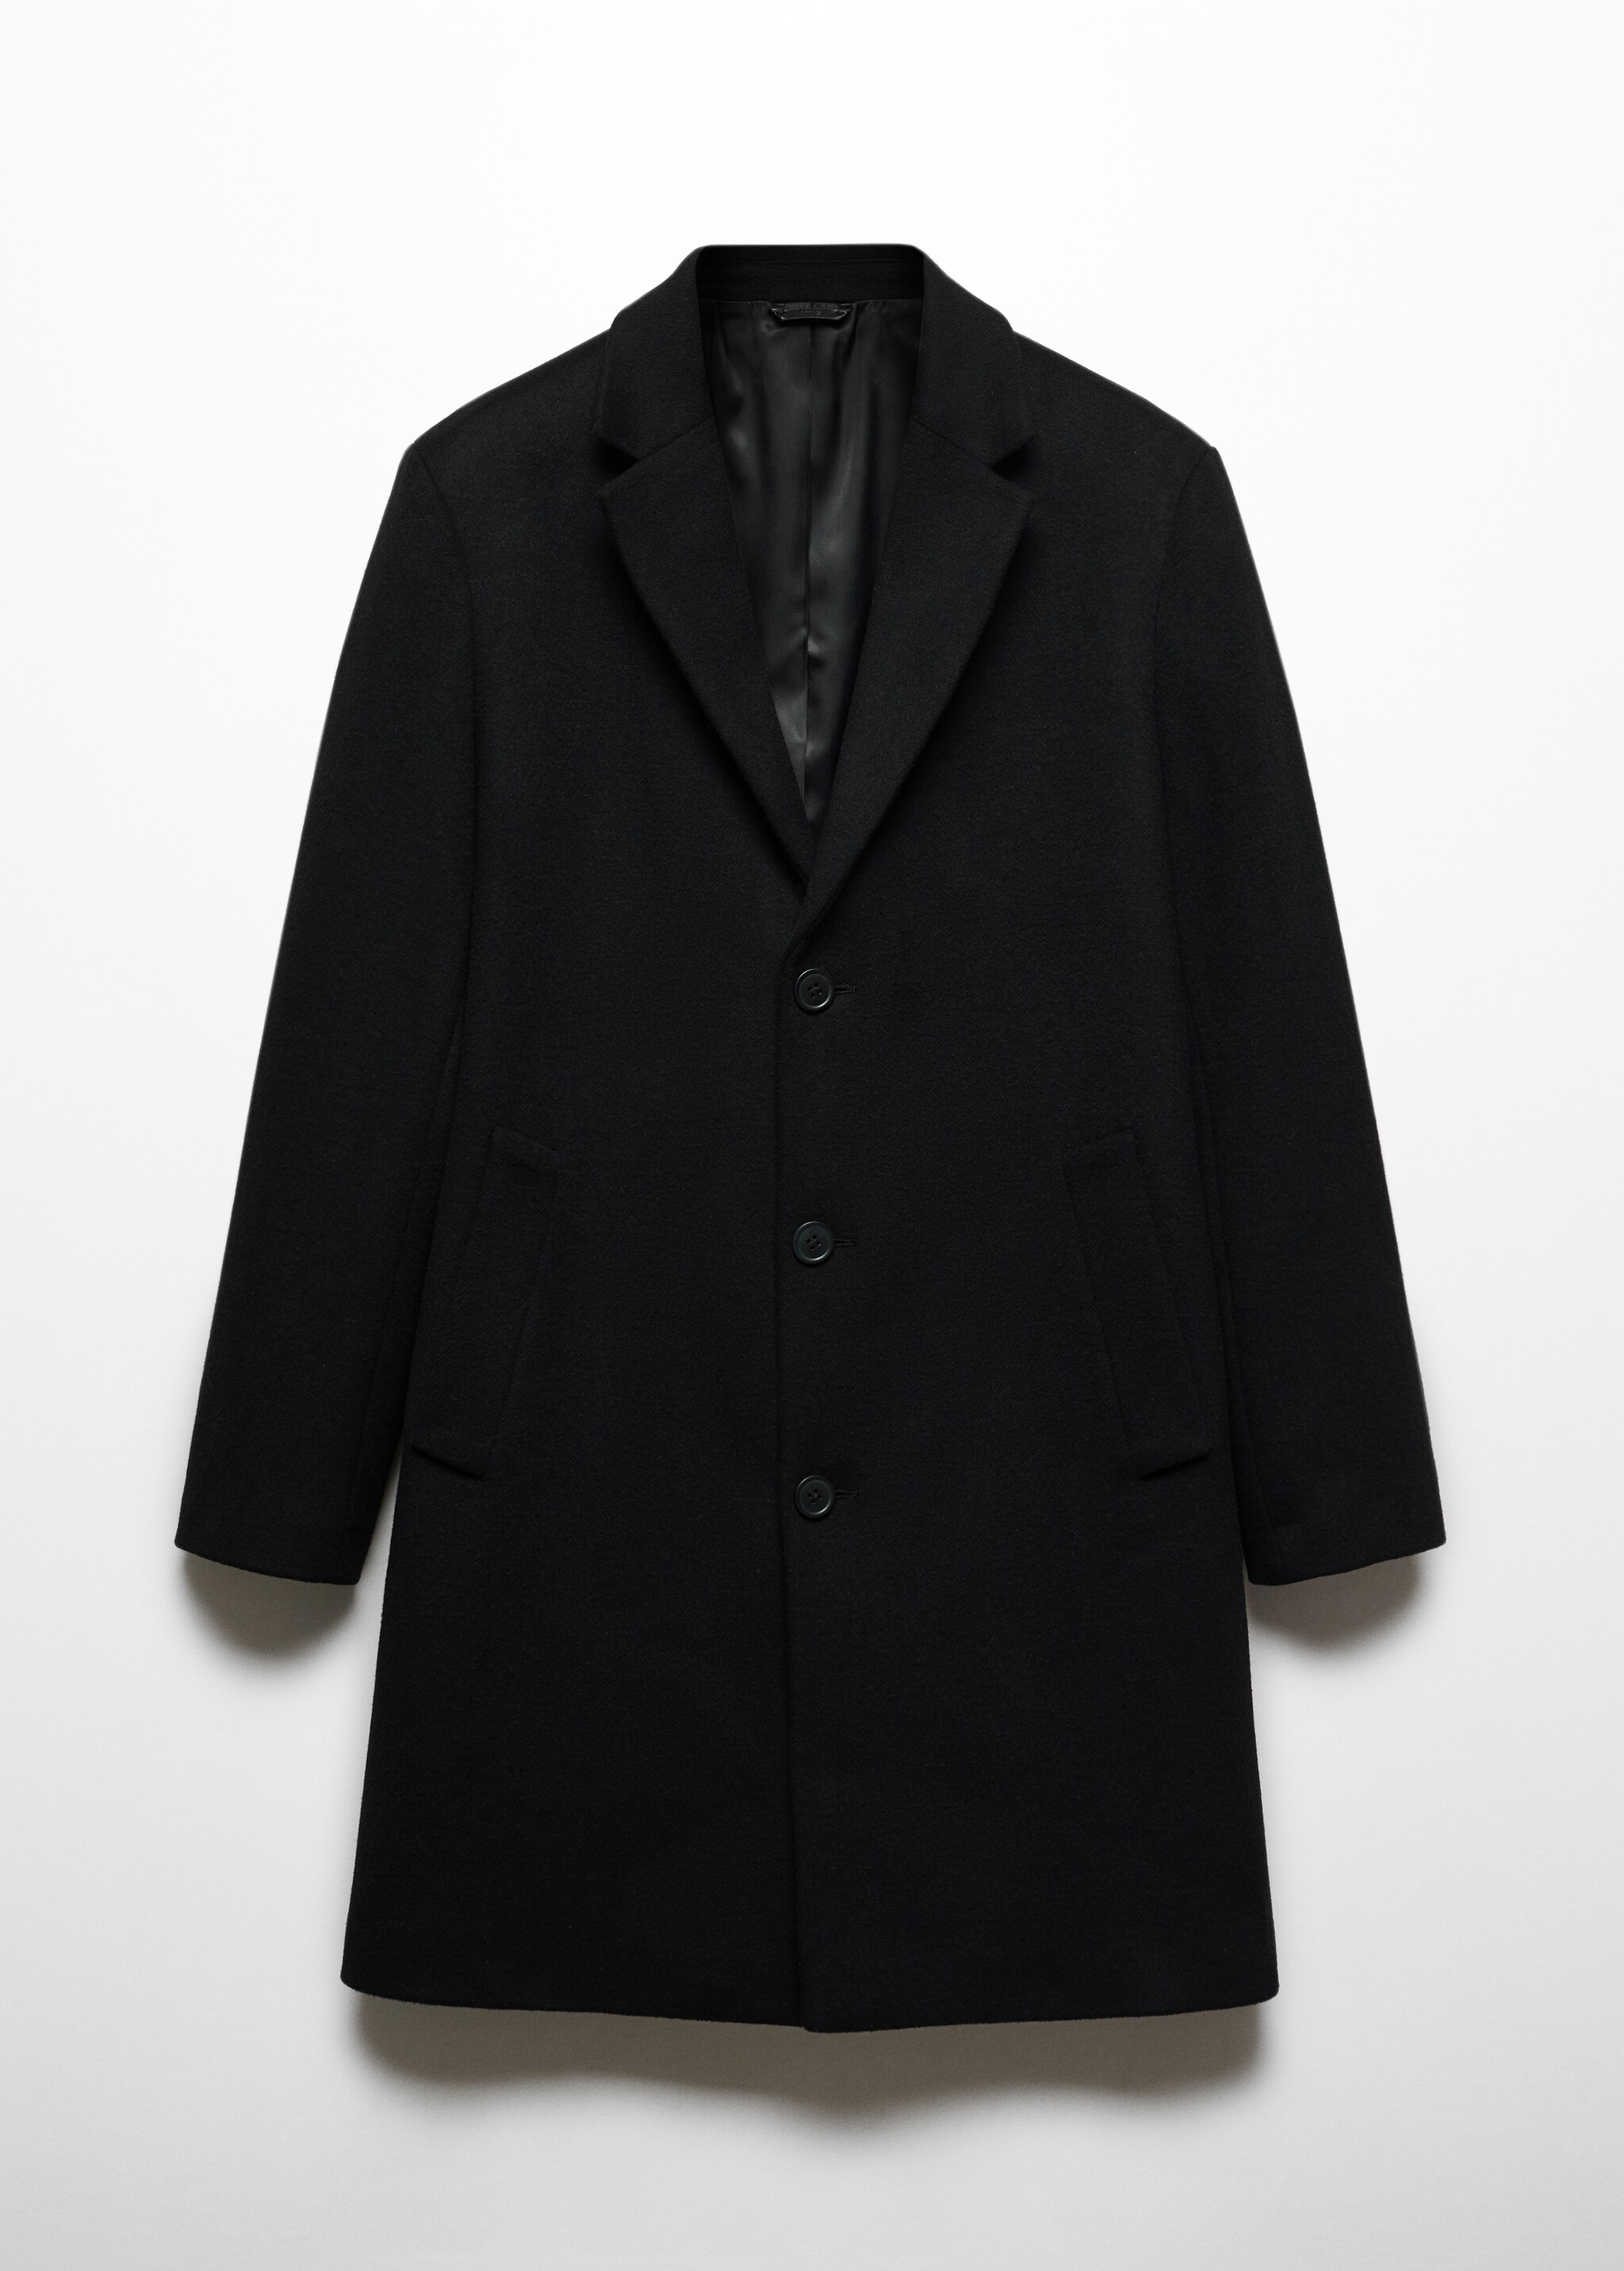 Пальто из переработанной шерсти - Изделие без модели